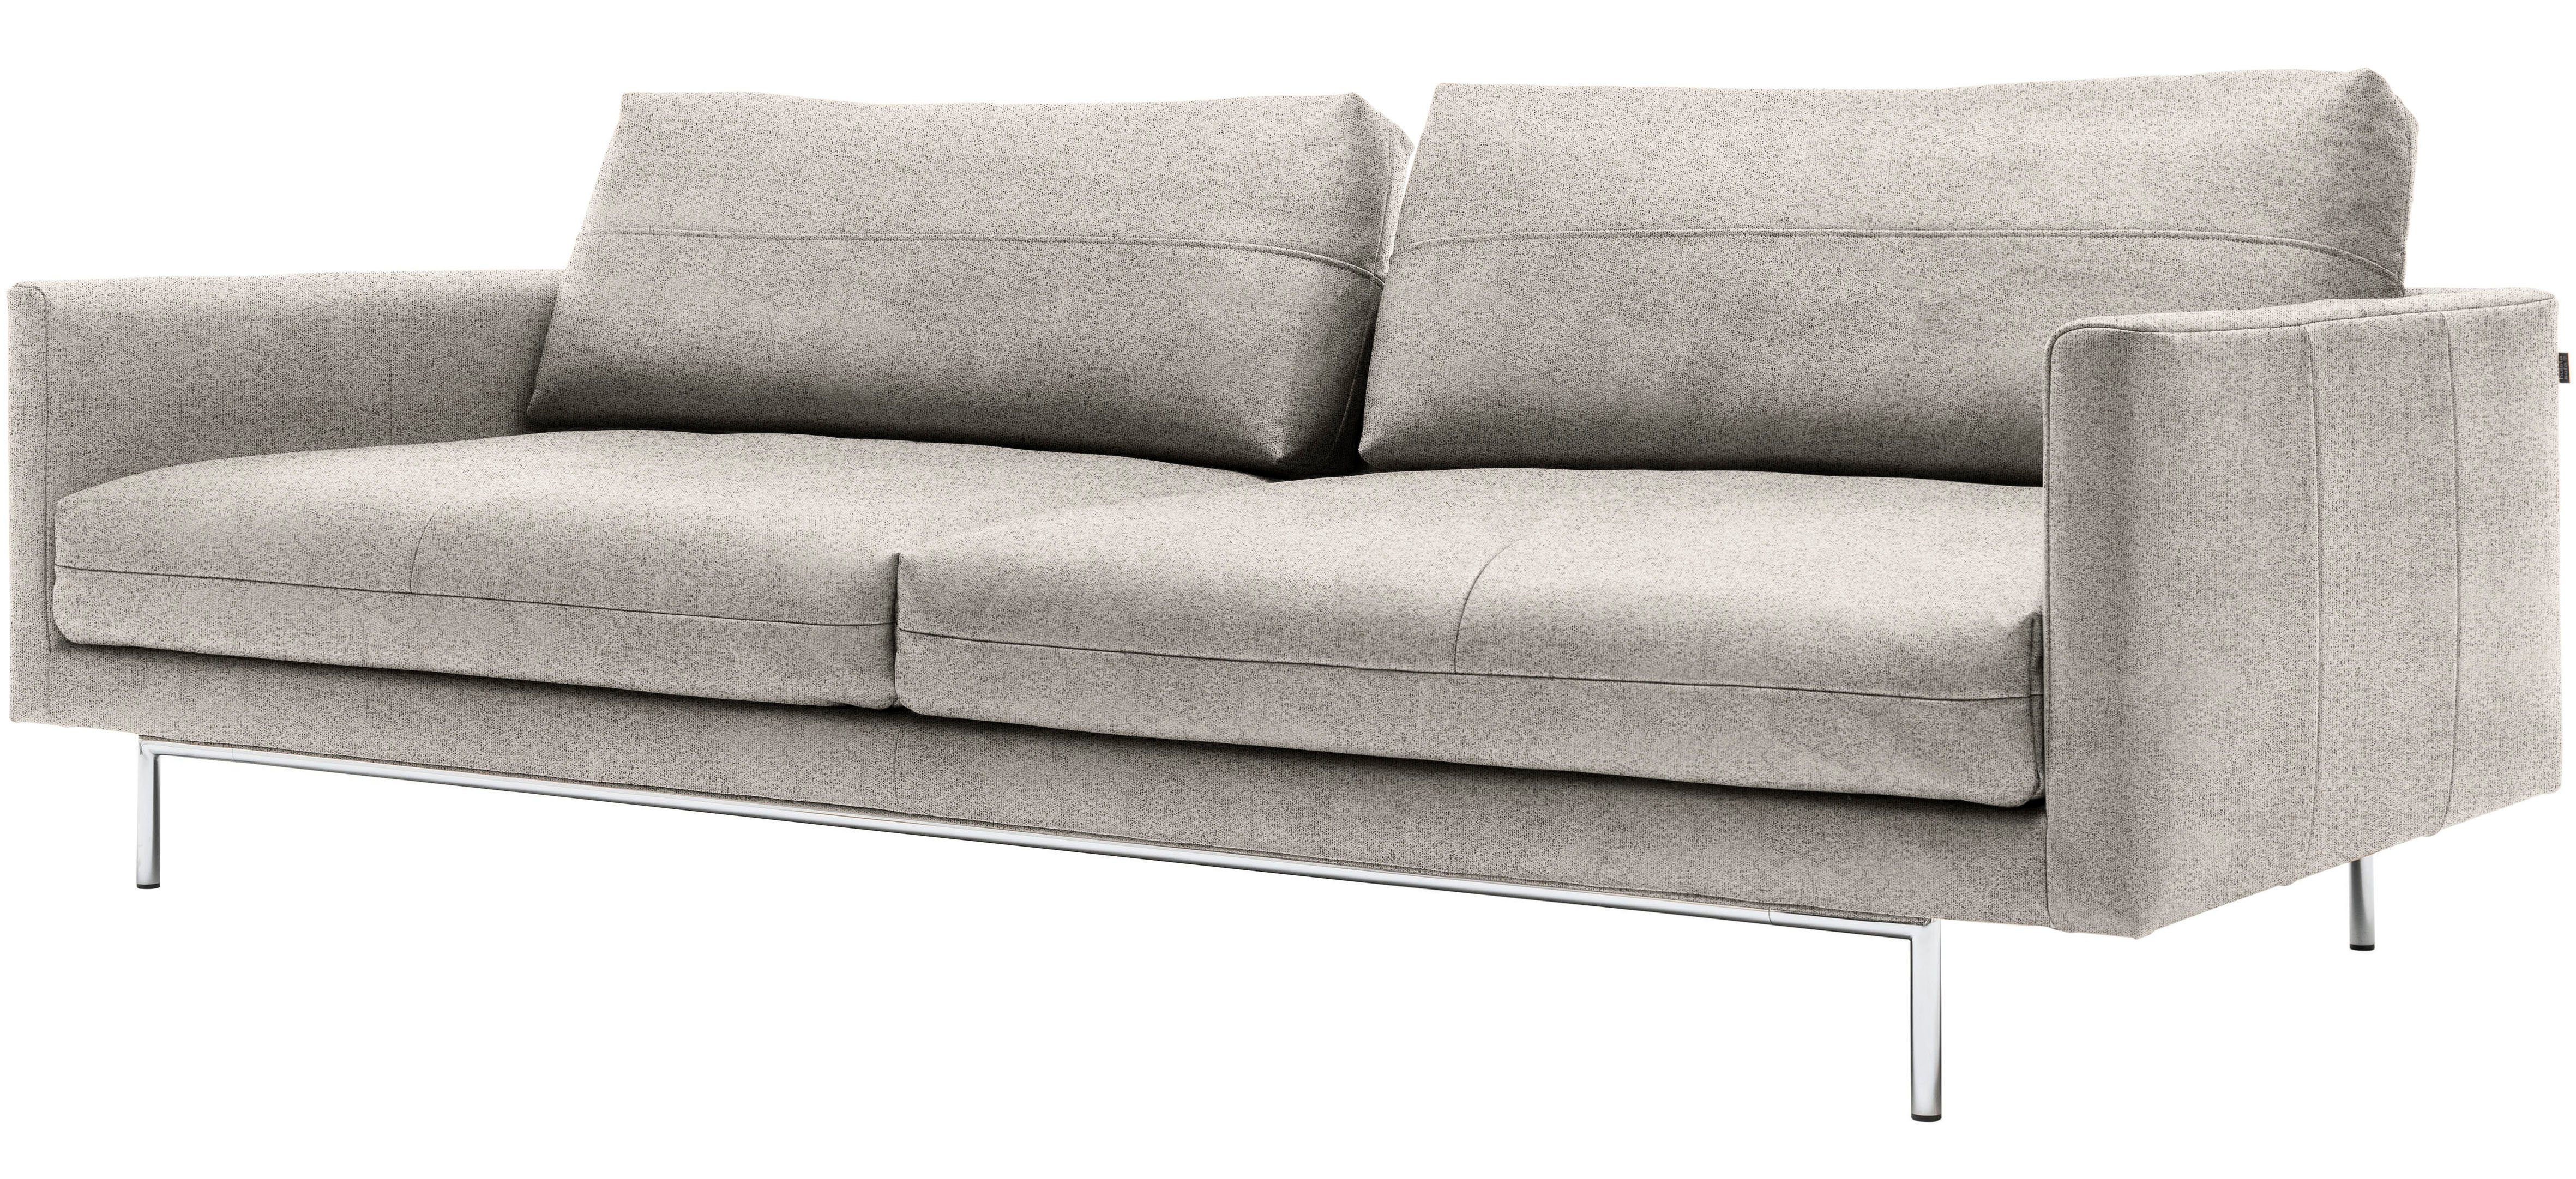 4-Sitzer seidengrau seidengrau sofa | hülsta